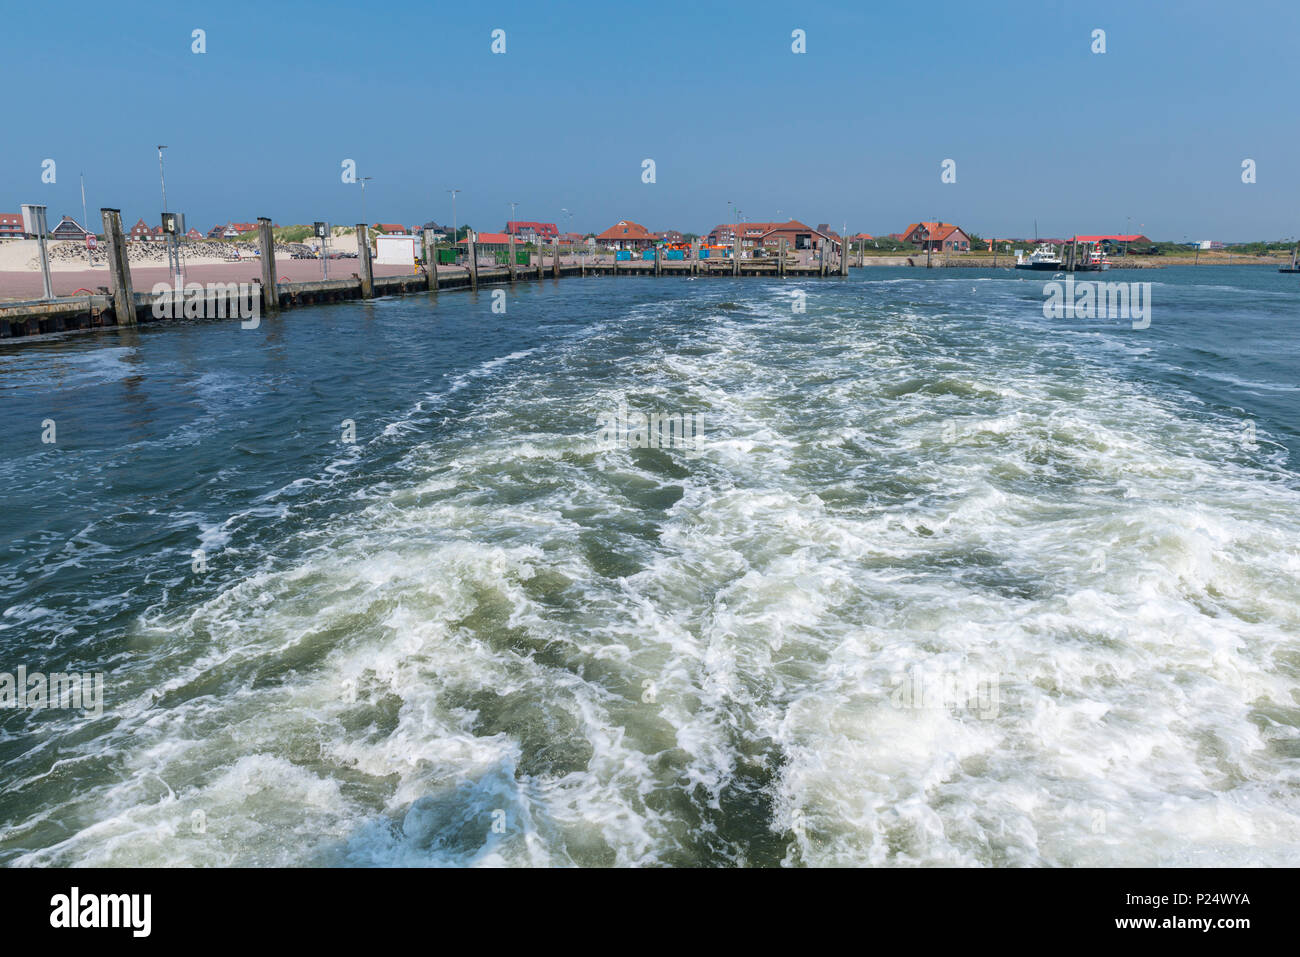 Die Inselfähre verläßt Baltrum Richtung Neßmersiel auf dem Festland, Baltrum, Ostfriesland, Niedersachsen, Deutschland Stock Photo